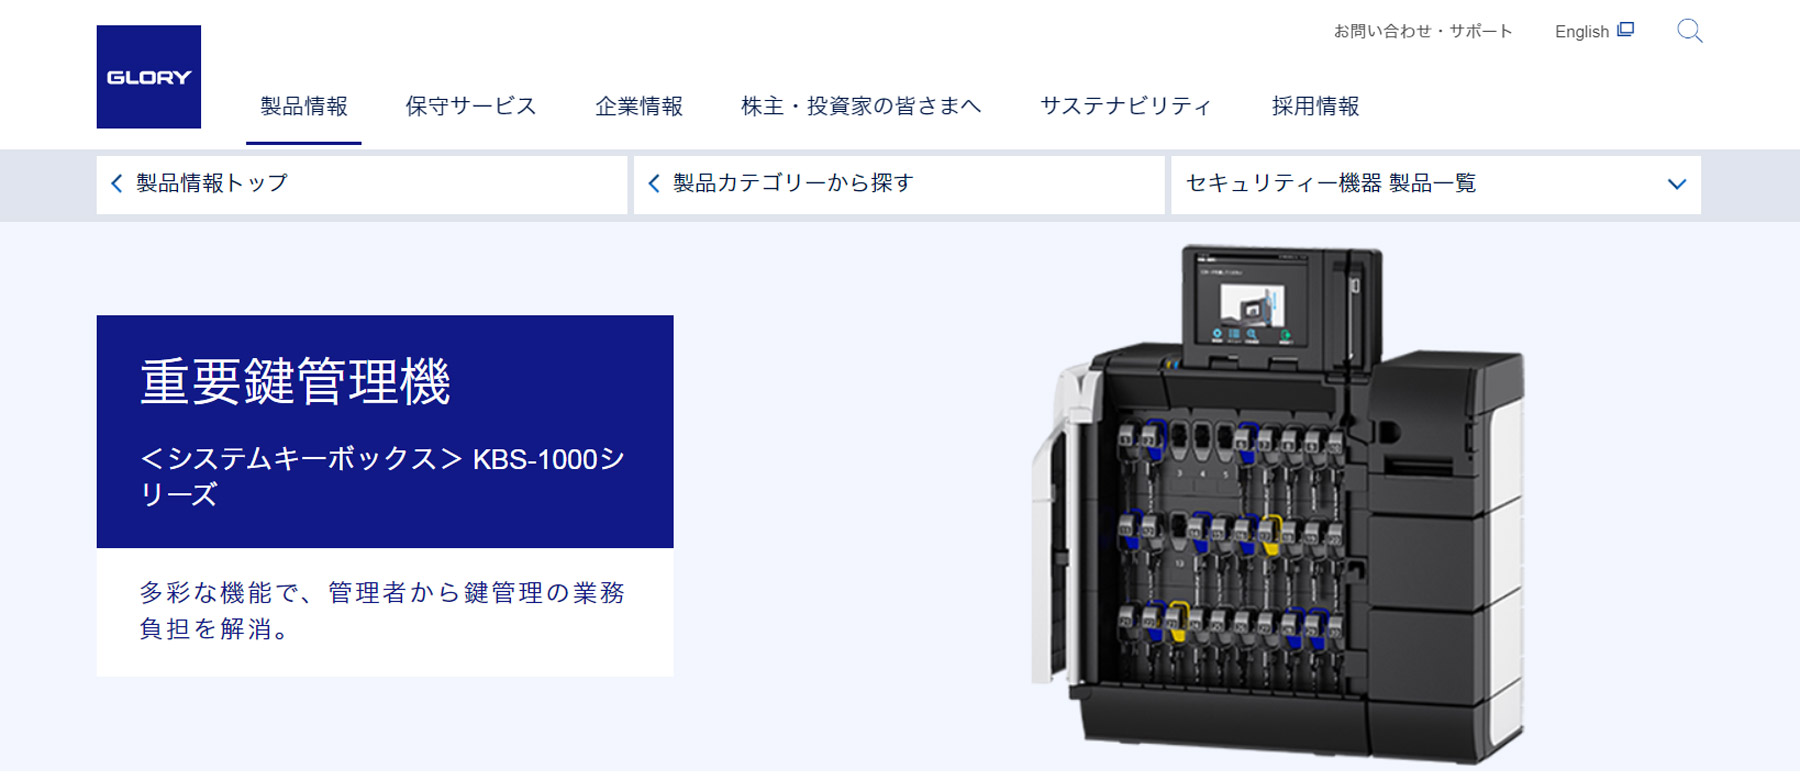 重要鍵管理機KBS-1000シリーズ公式Webサイト